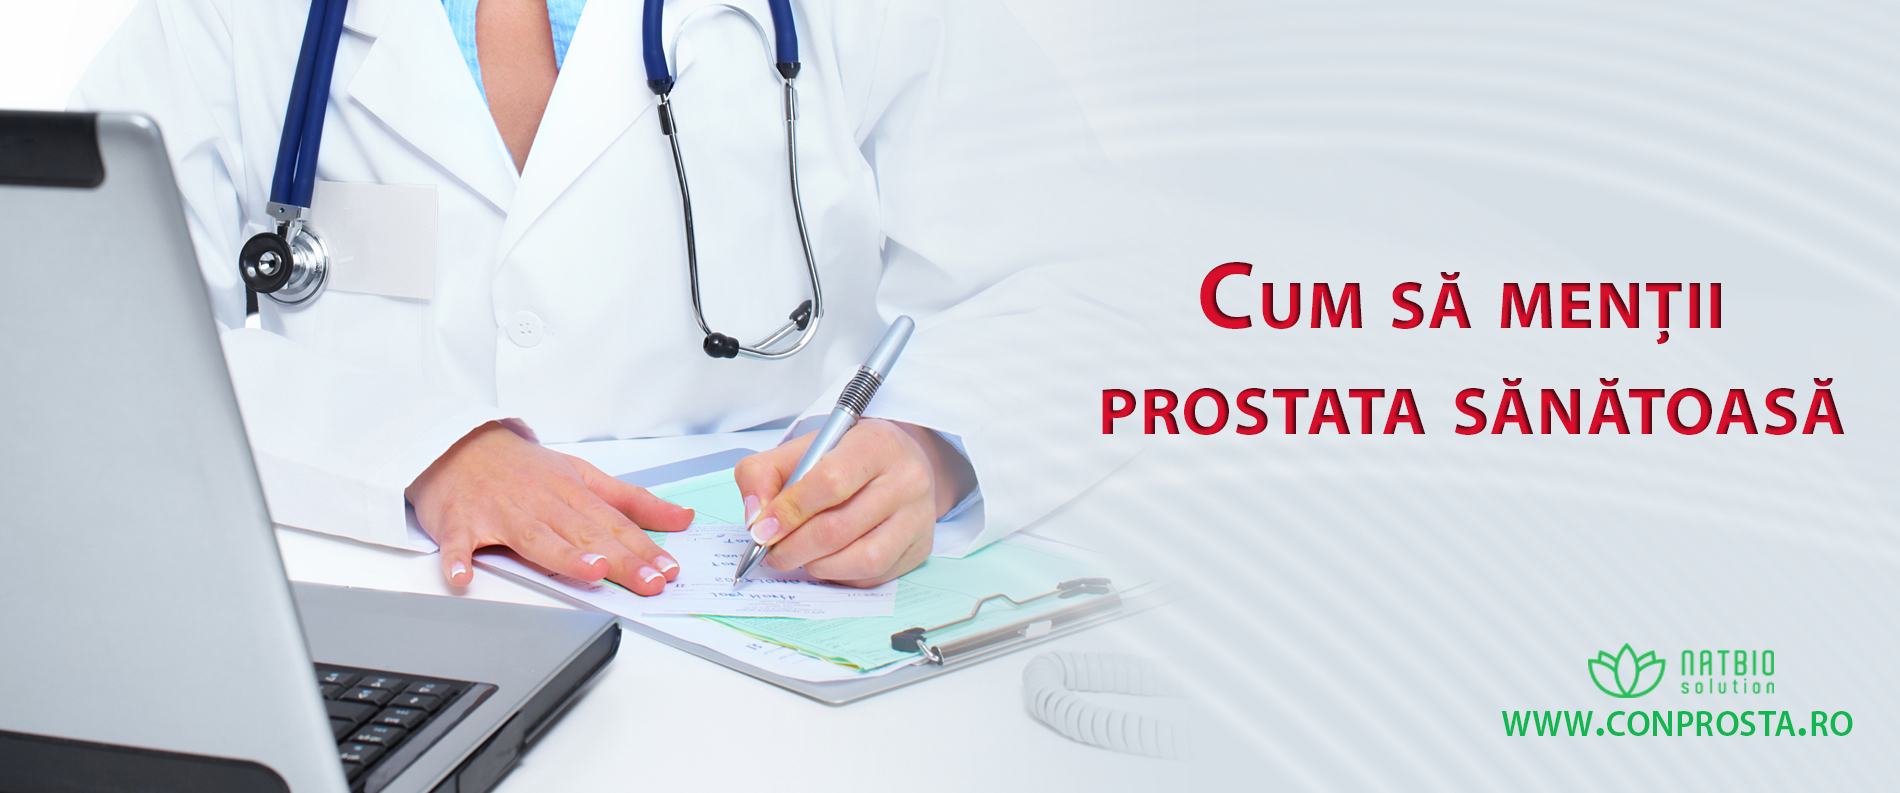 Cum să menții prostata sănătoasă